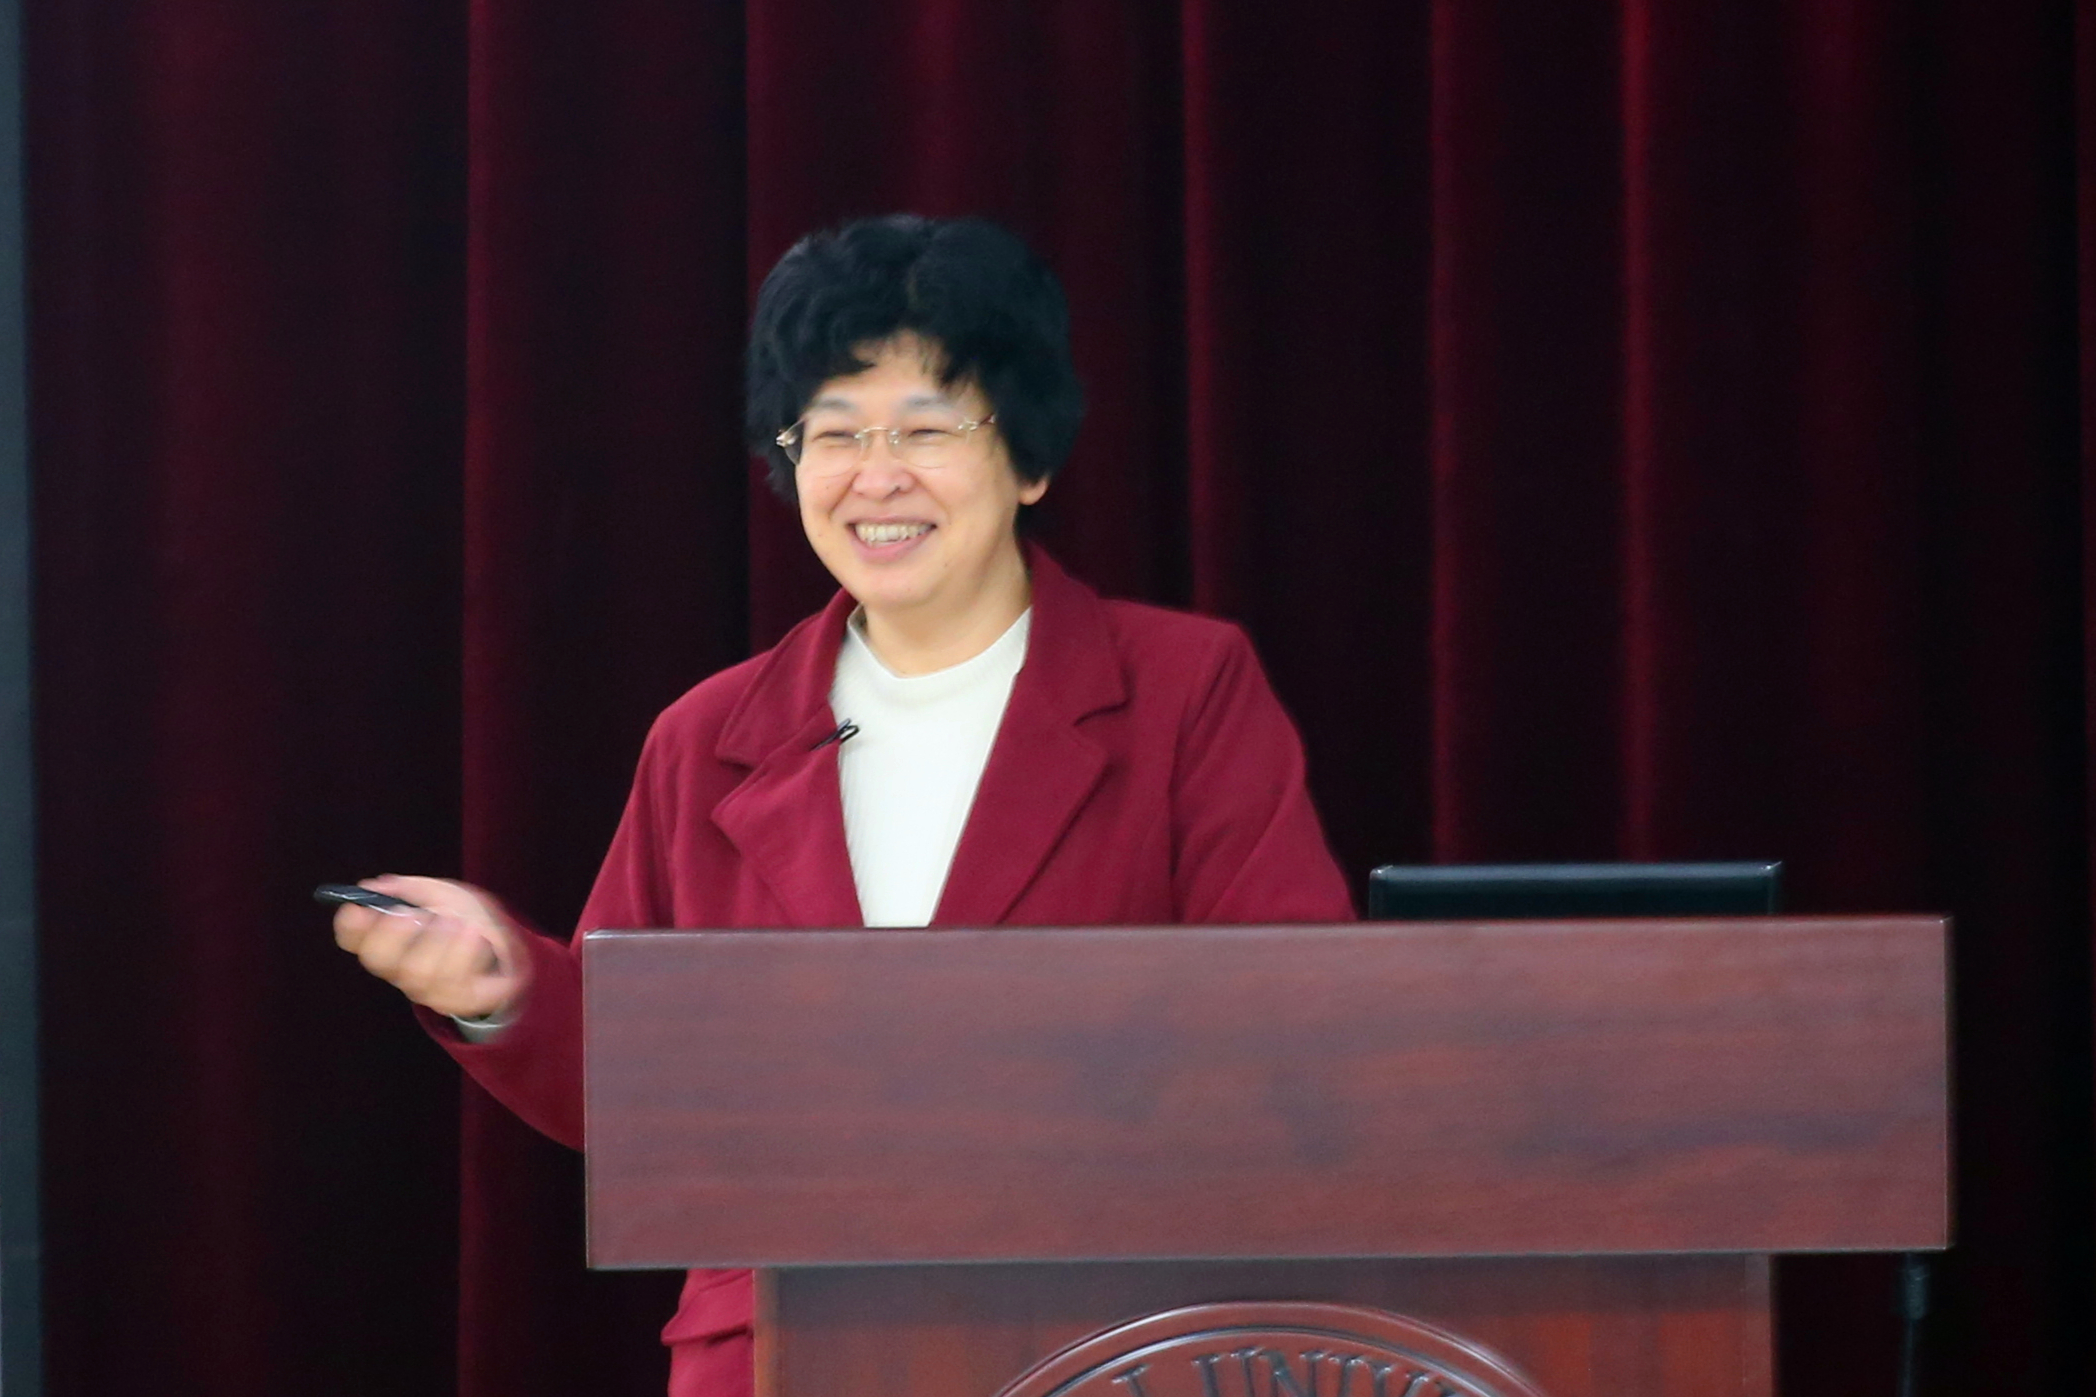 Prof. Kyoko Nozaki from the University of Tokyo Visits SKLEOC